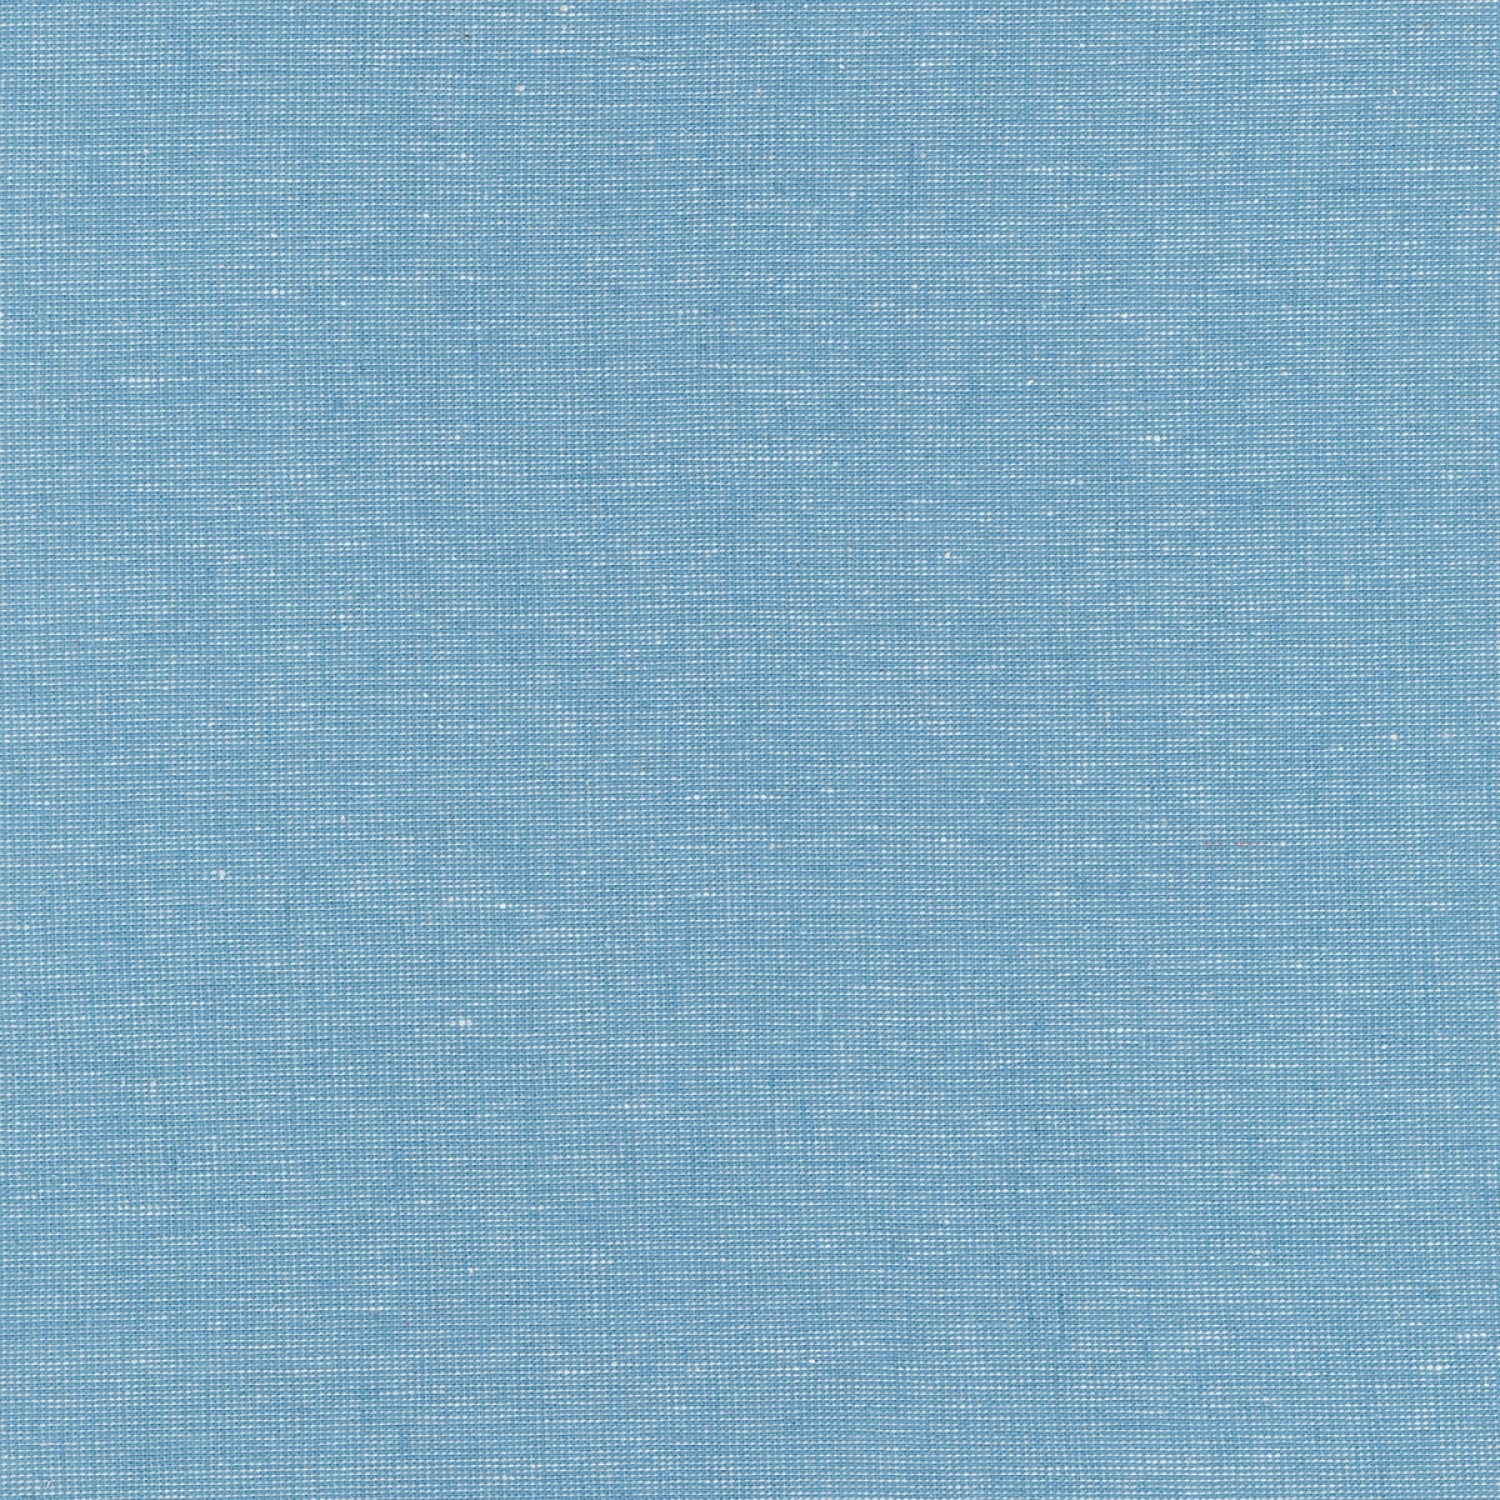 Stoffe di Cotone Tinta Unita – Stoffa al Metro 100/% Cotone Disponibile in Diversi Colori designers-factory Tessuto di Cotone al Metro Tessuto in Popeline per Cucire 1m x 1m46, Blu Scuro